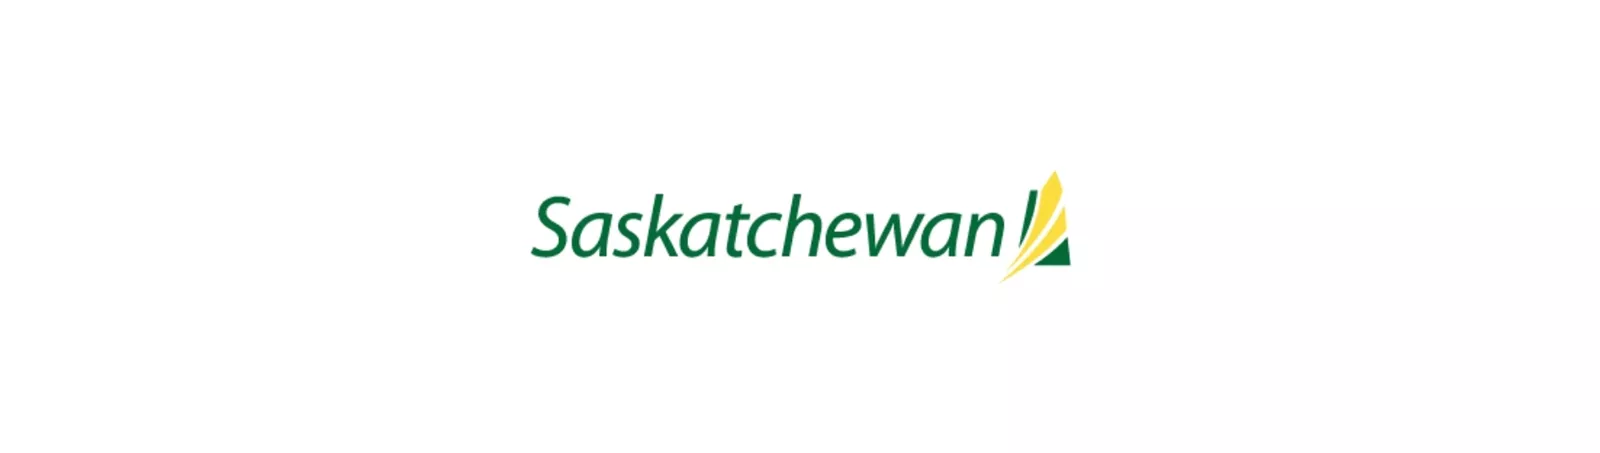 Saskatchewan Header